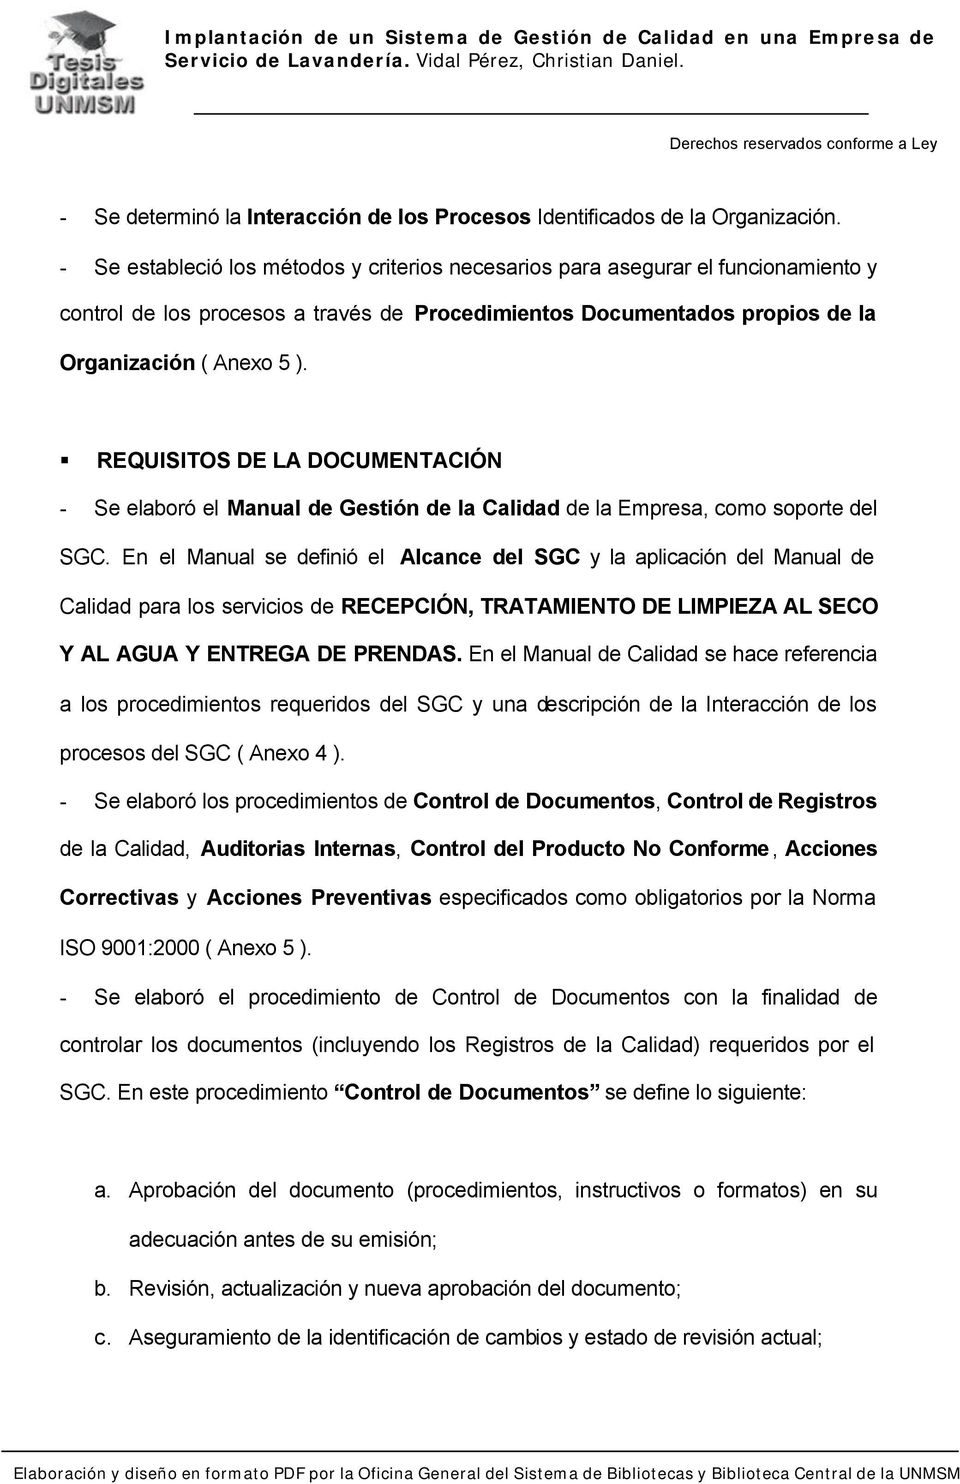 REQUISITOS DE LA DOCUMENTACIÓN - Se elaboró el Manual de Gestión de la Calidad de la Empresa, como soporte del SGC.